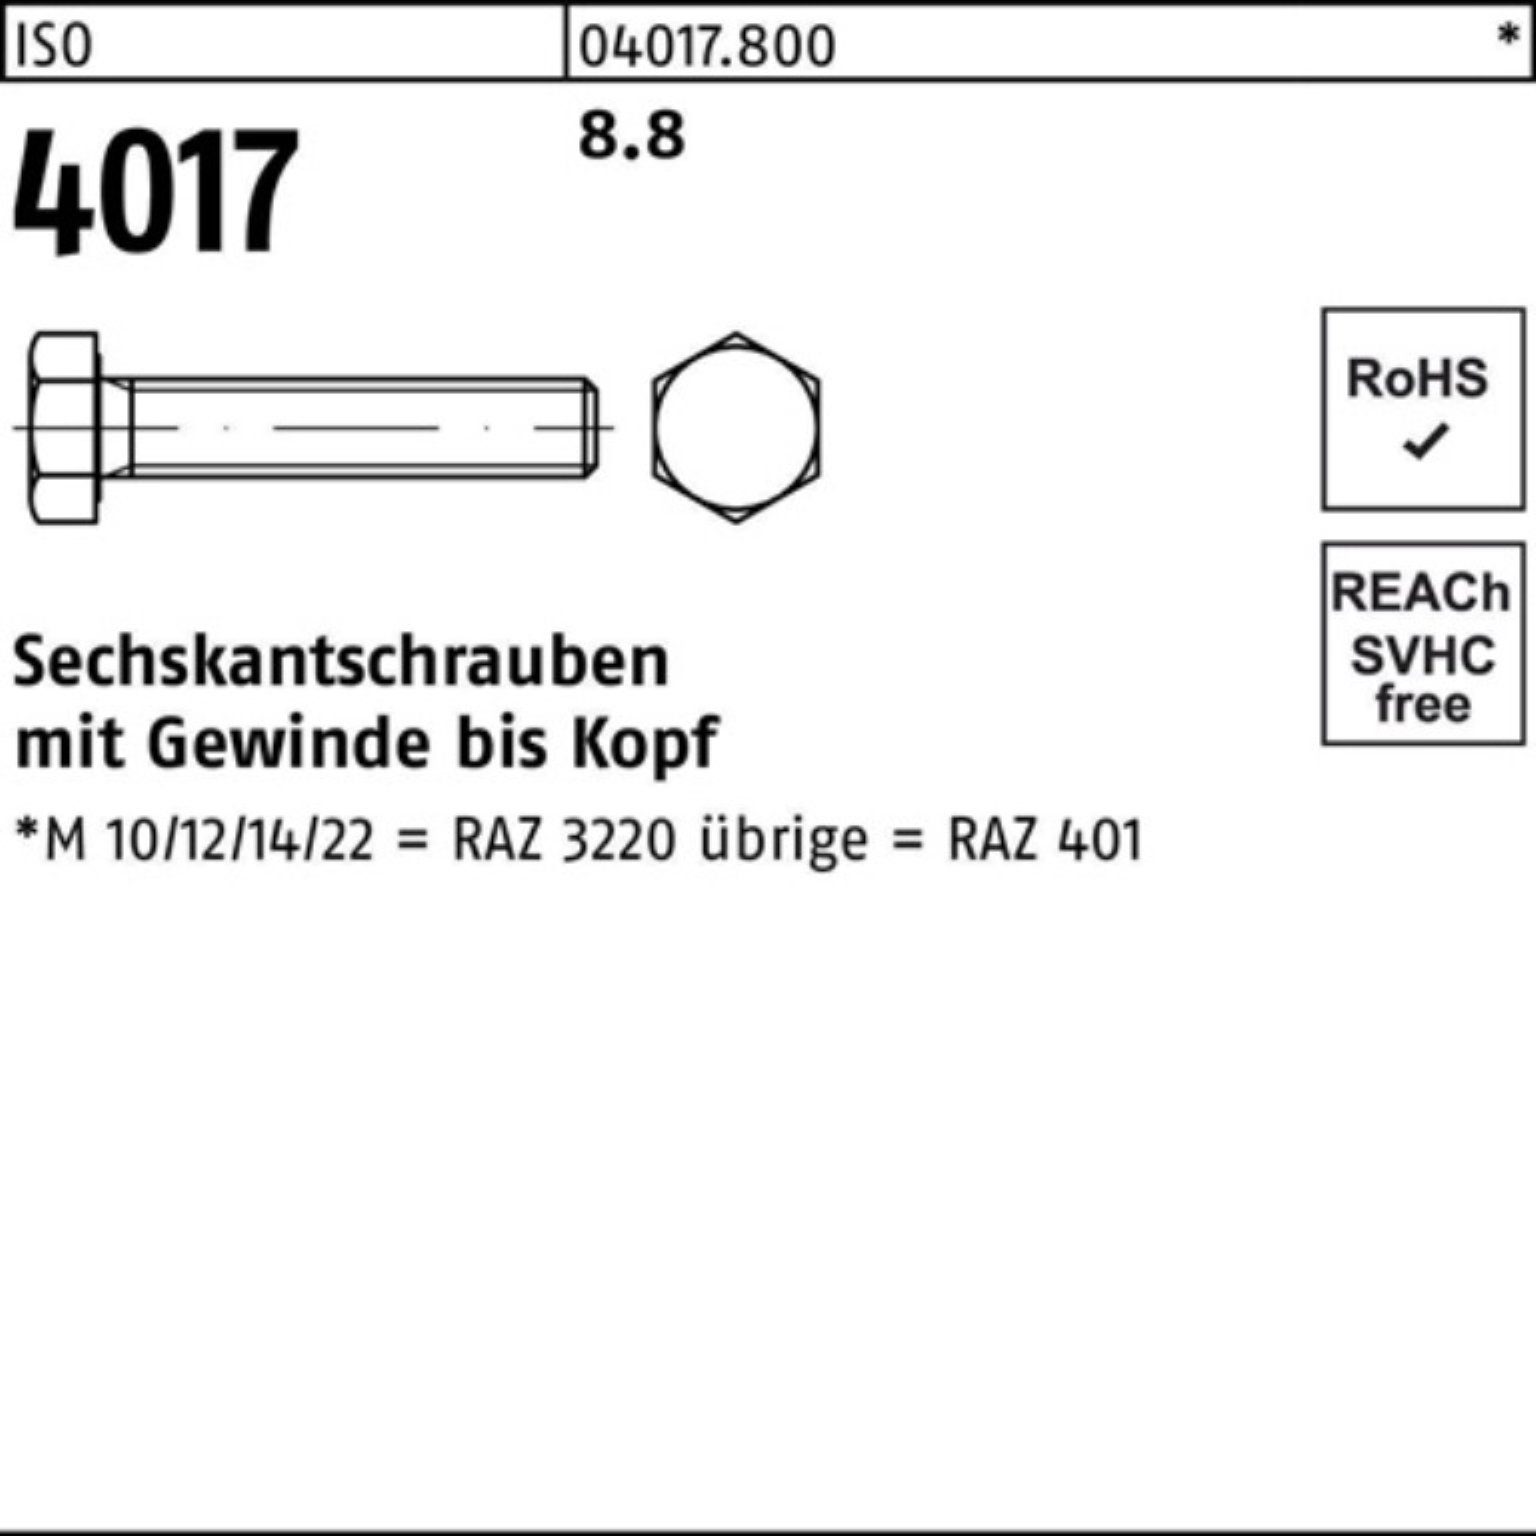 Sechskantschraube 30 VG ISO Sechskantschraube 500 Bufab 8.8 M7x 4017 500er ISO Stück Pack 401